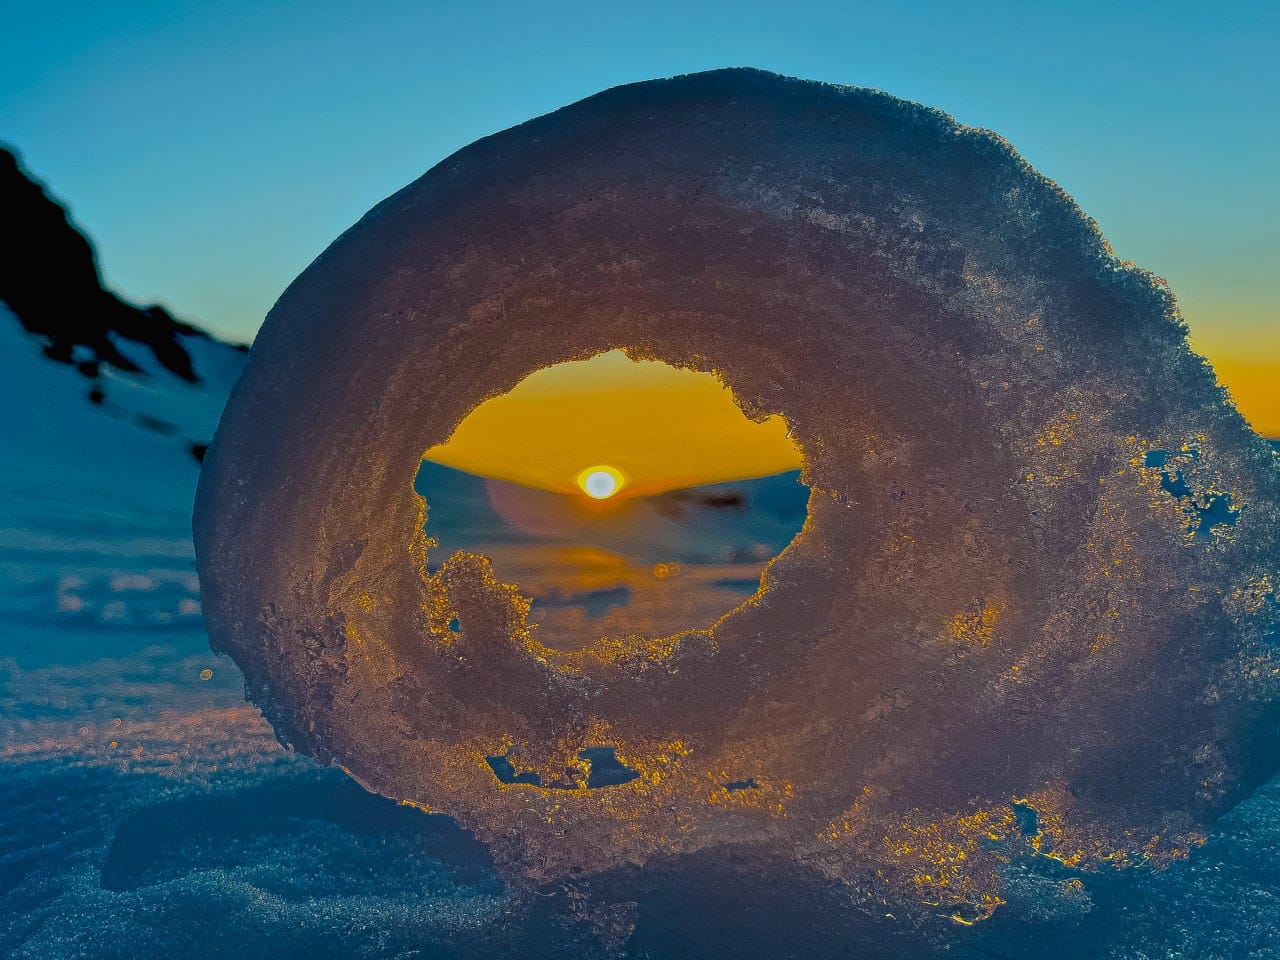 Ученые станции ”Академик Вернадский” показали красивейшее природное явление - ”пончики” из снега: фото — фото